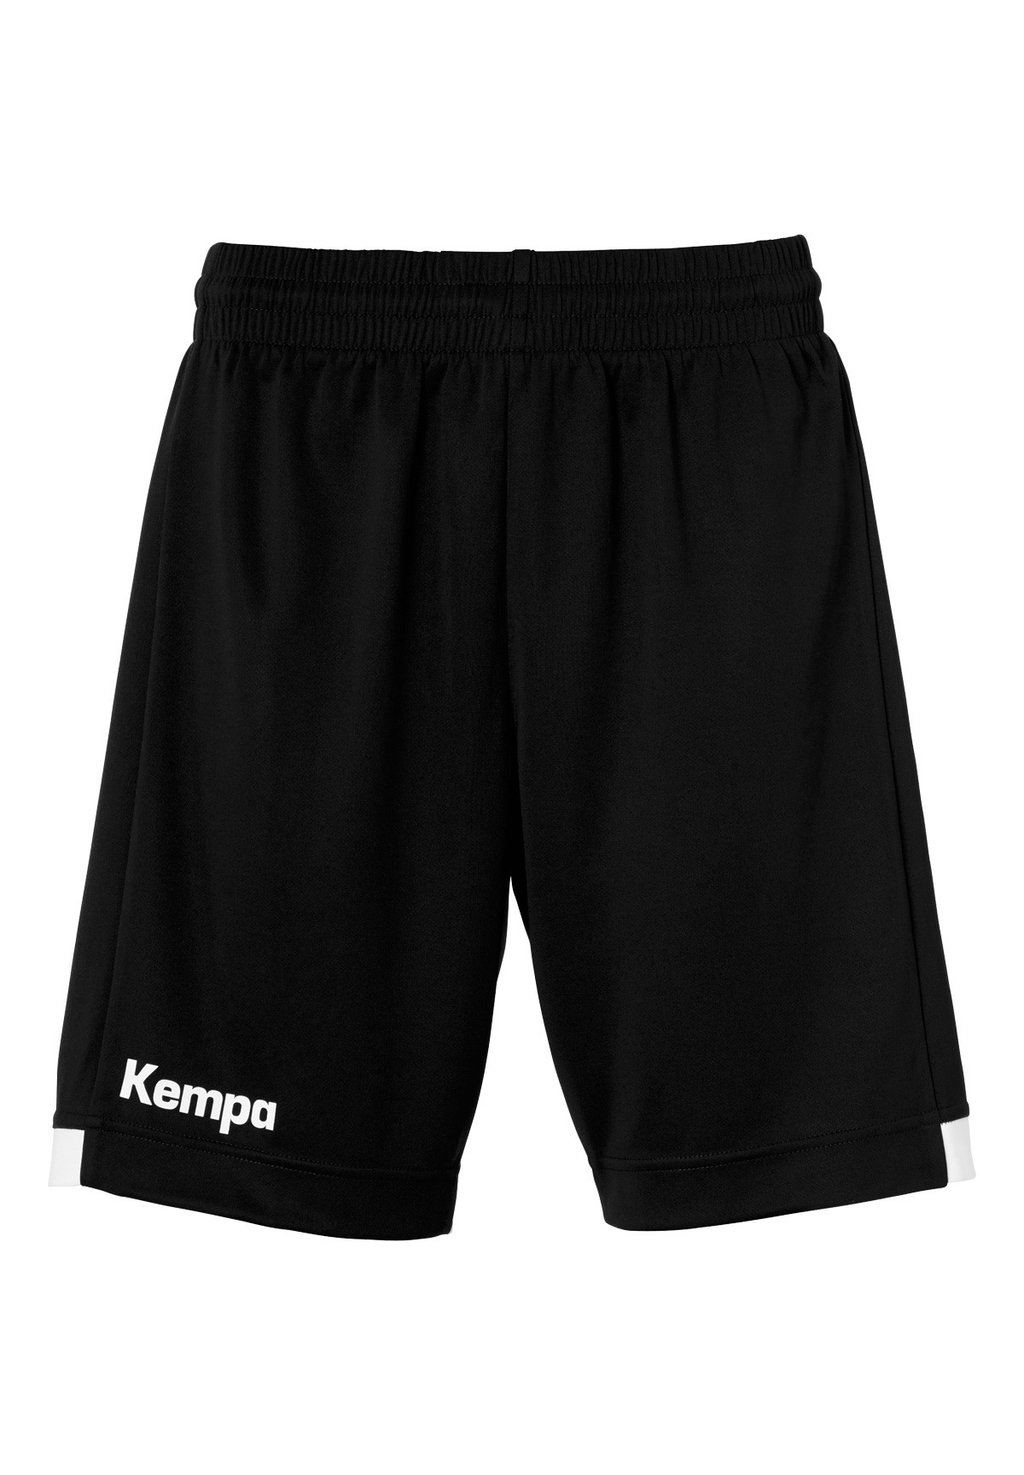 Спортивные шорты PLAYER LONG Kempa, цвет schwarz weiß